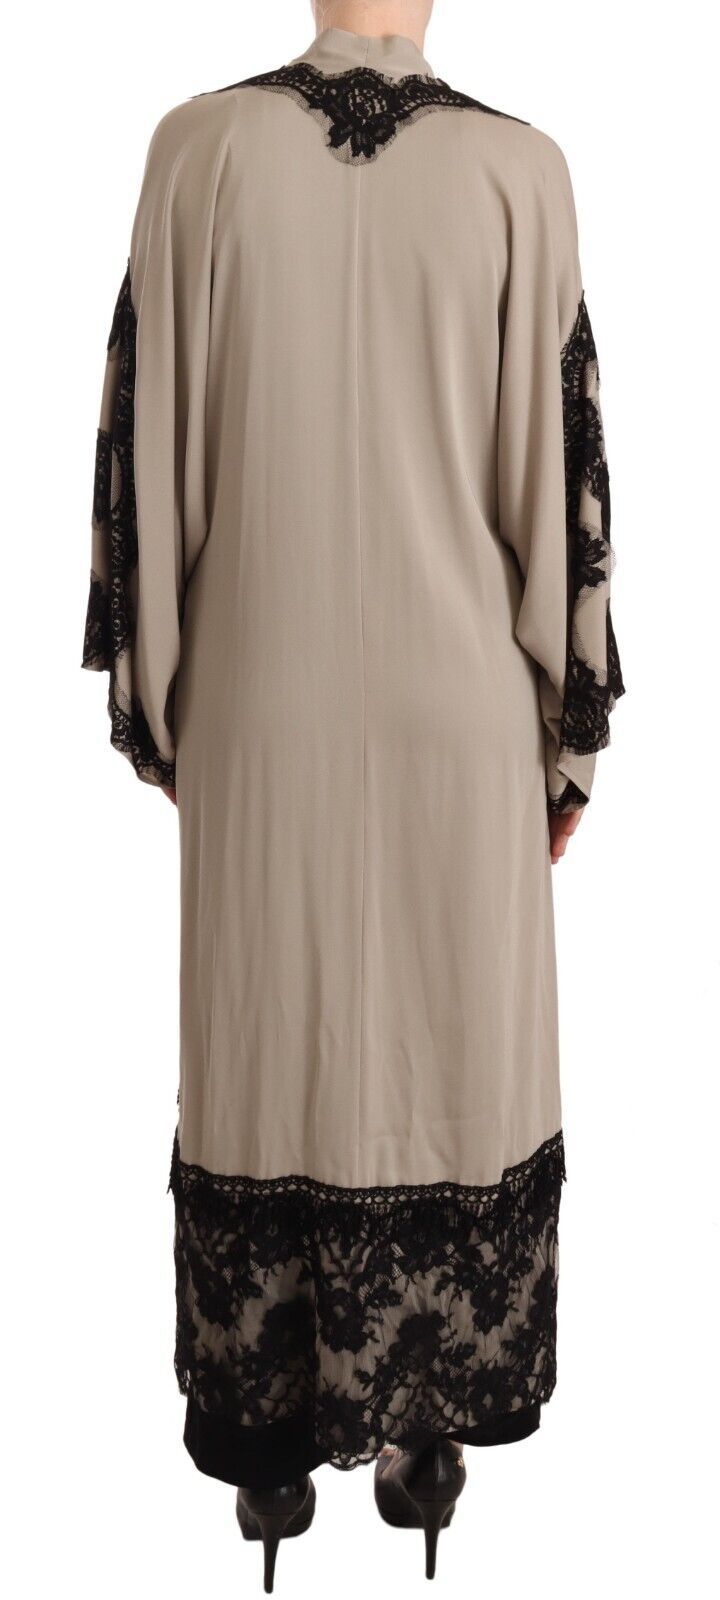 Elegant Beige Embroidered Lace Kaftan Dress